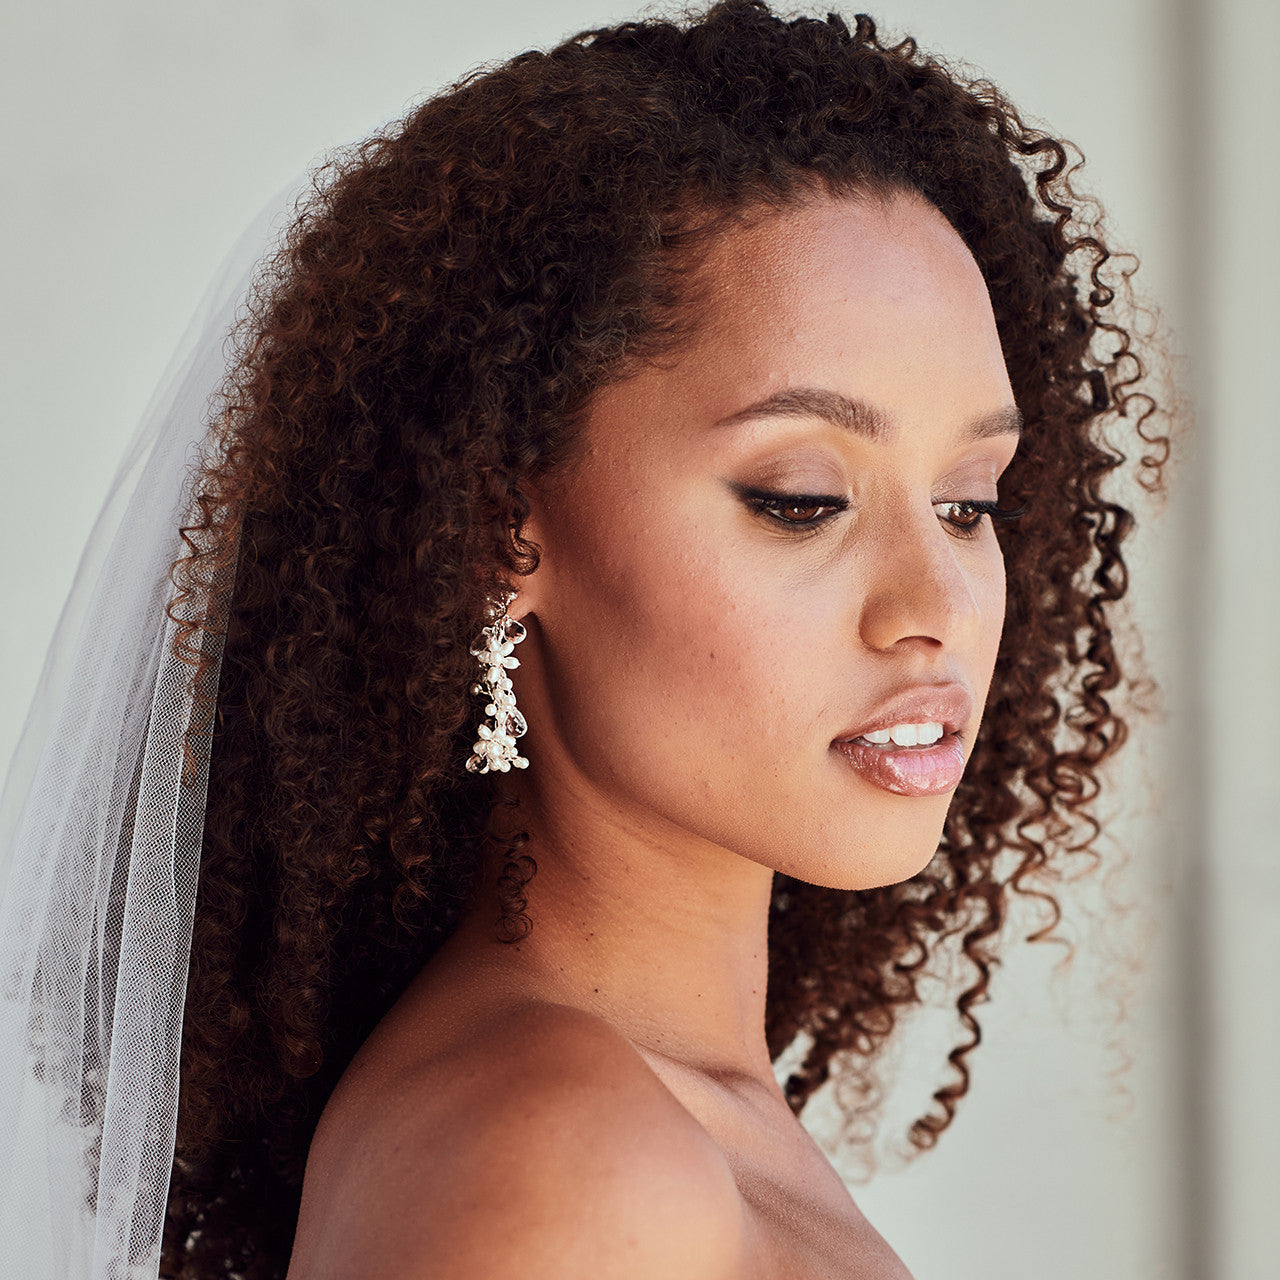 E2346 Bridal Earrings